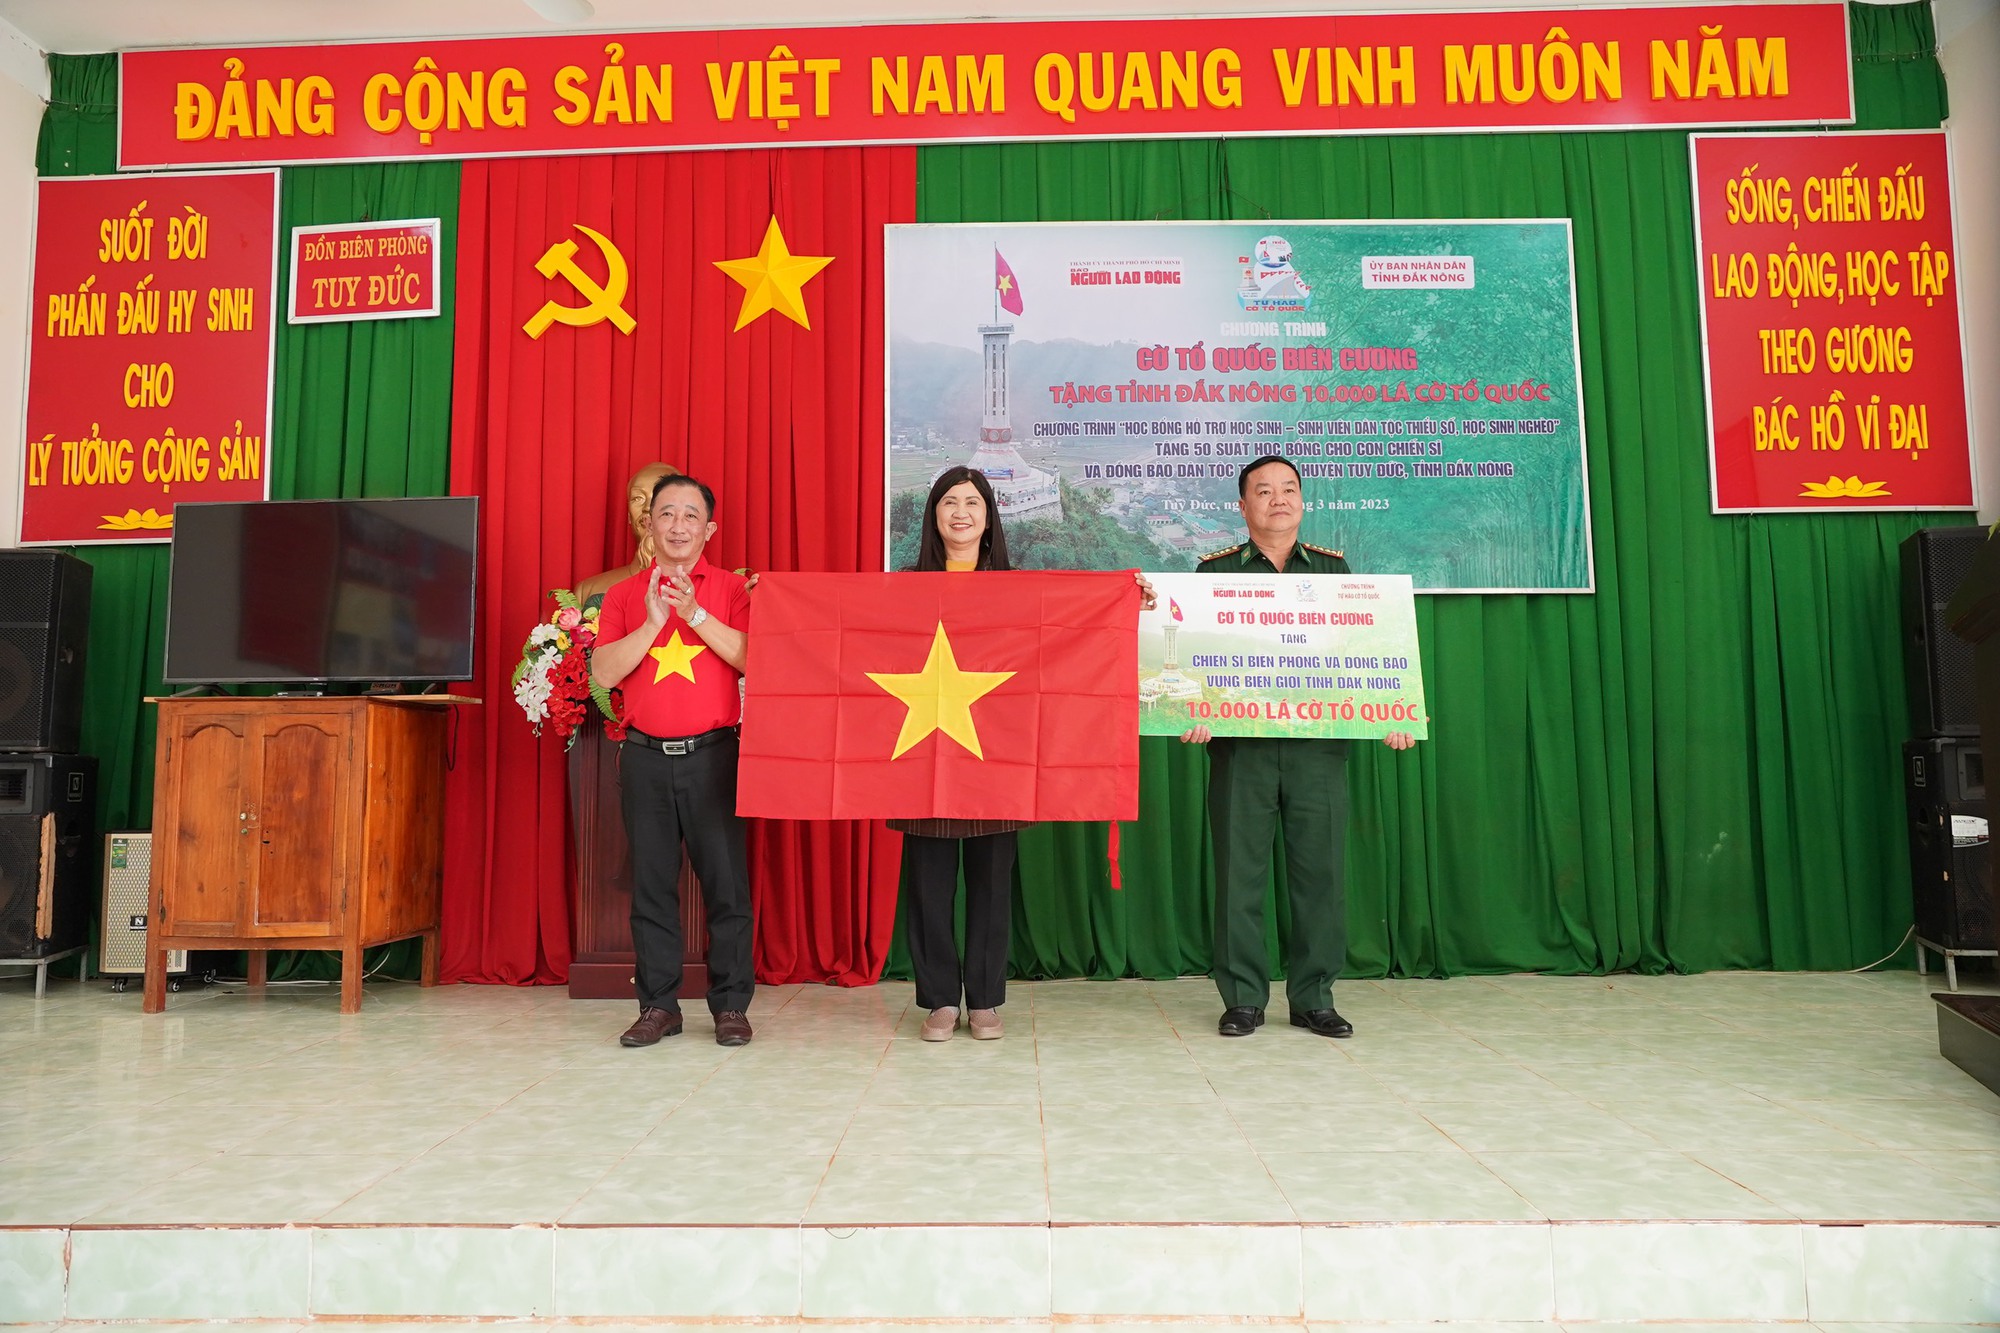 Trao tặng 10.000 lá cờ Tổ quốc cho vùng biên giới ở tỉnh Đắk Nông - Ảnh 1.